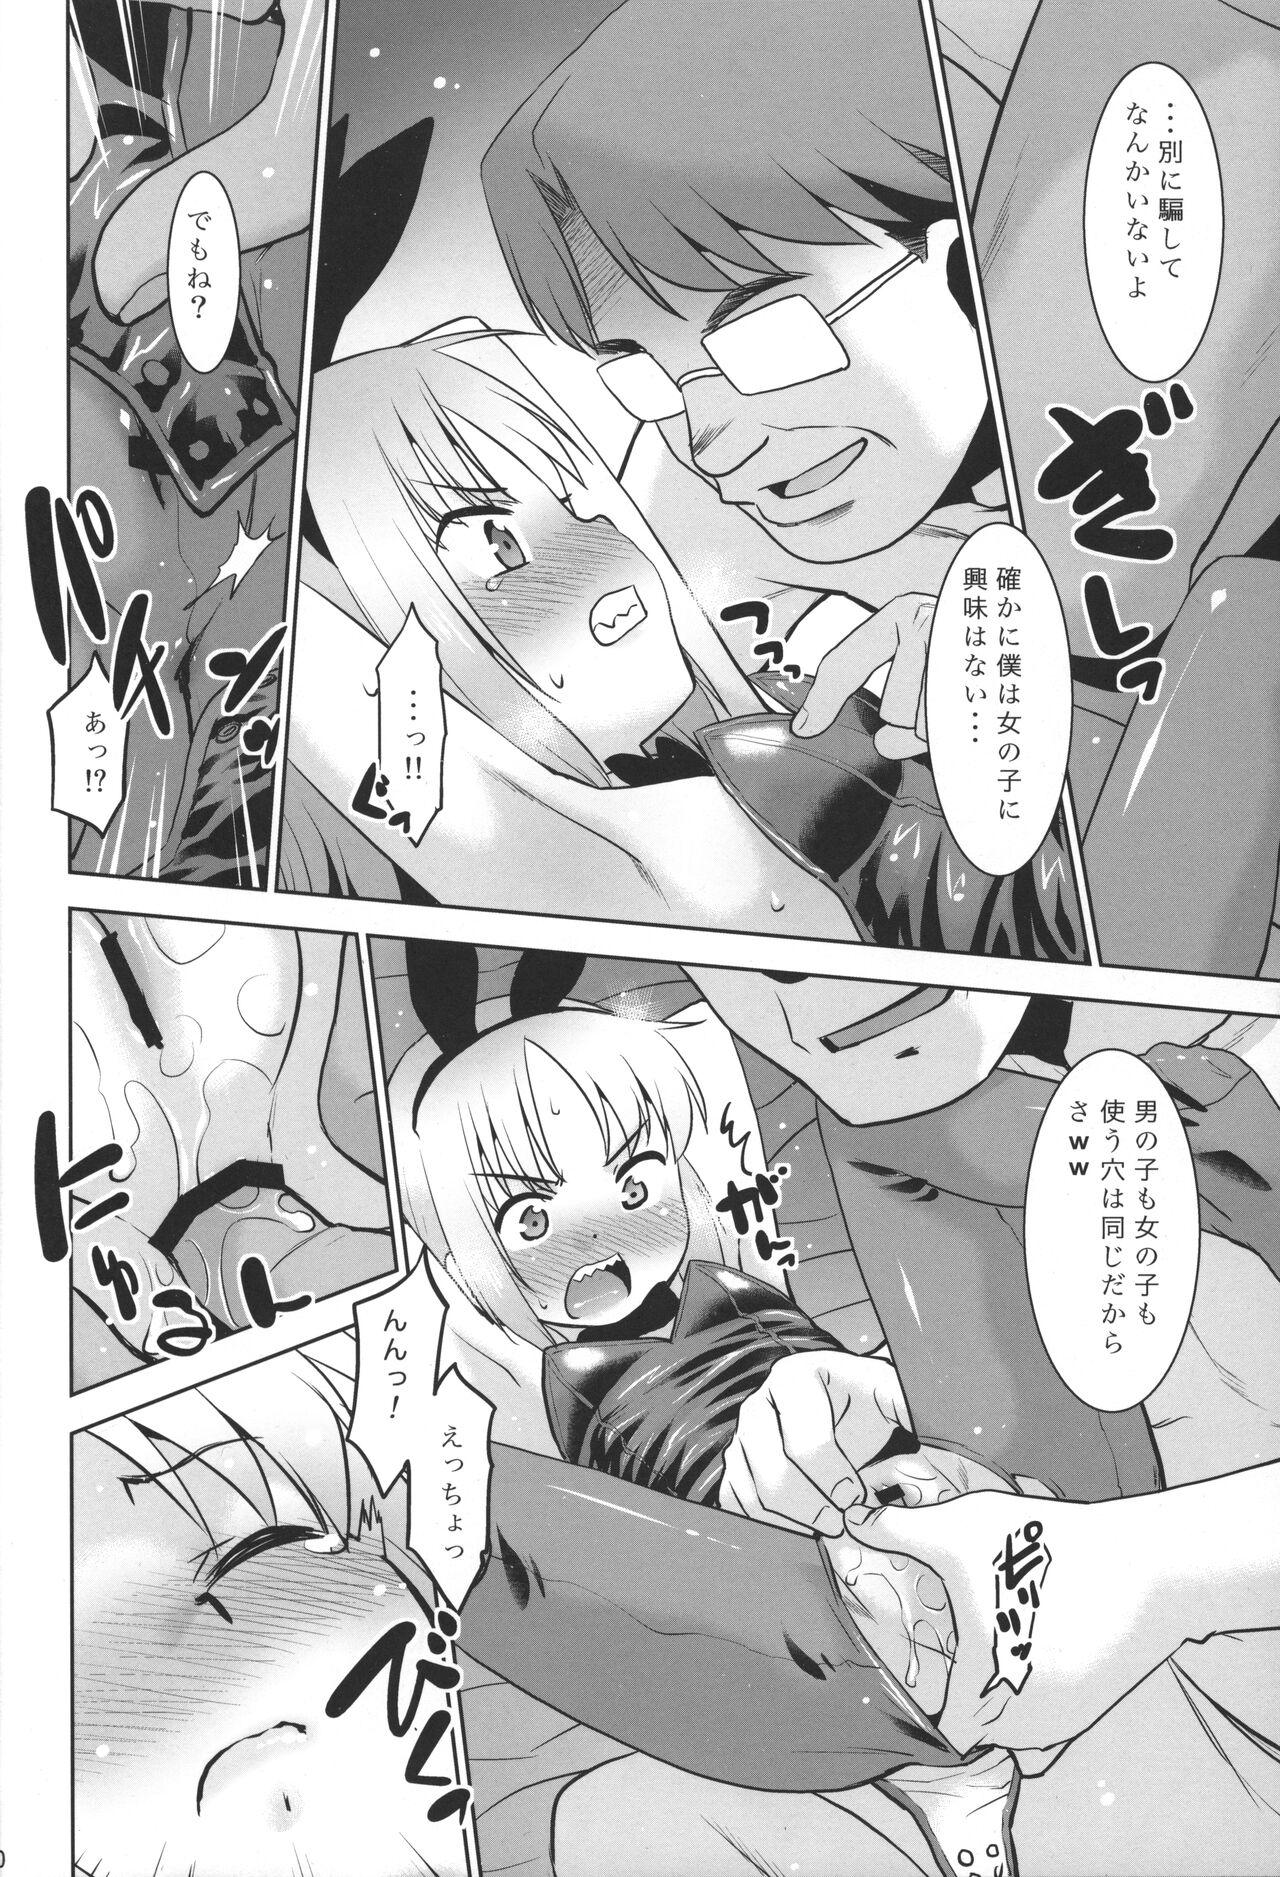 Butt Uchi no Aniki ga Onna no ko ni natta kara Minna de Mawasou ze! 2 - Original Gaypawn - Page 9